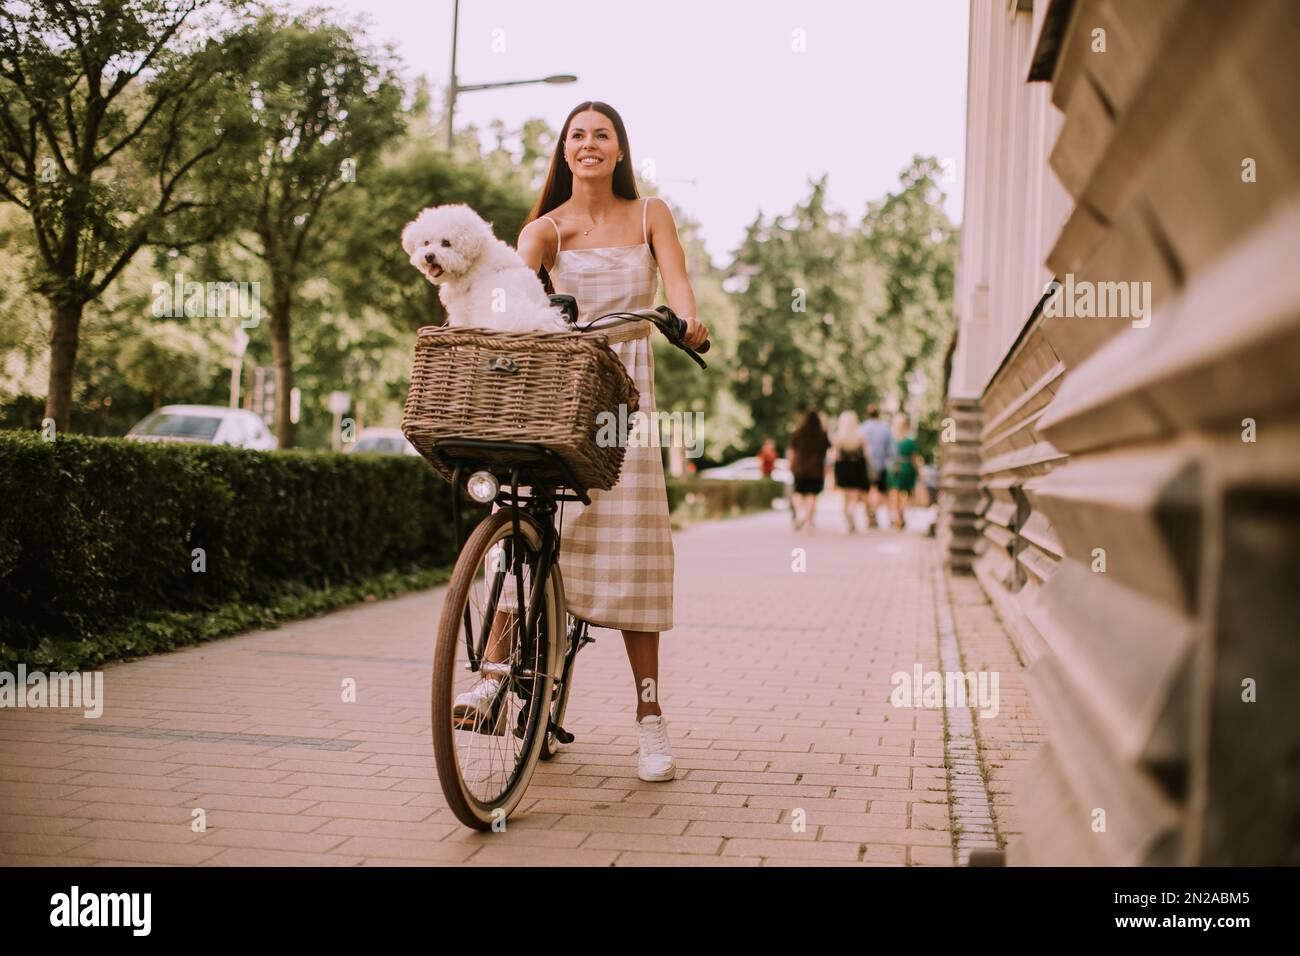 Hübsche junge Frau mit einem bichon-Hund im Fahrradkorb macht eine gemütliche Fahrt Stockfoto